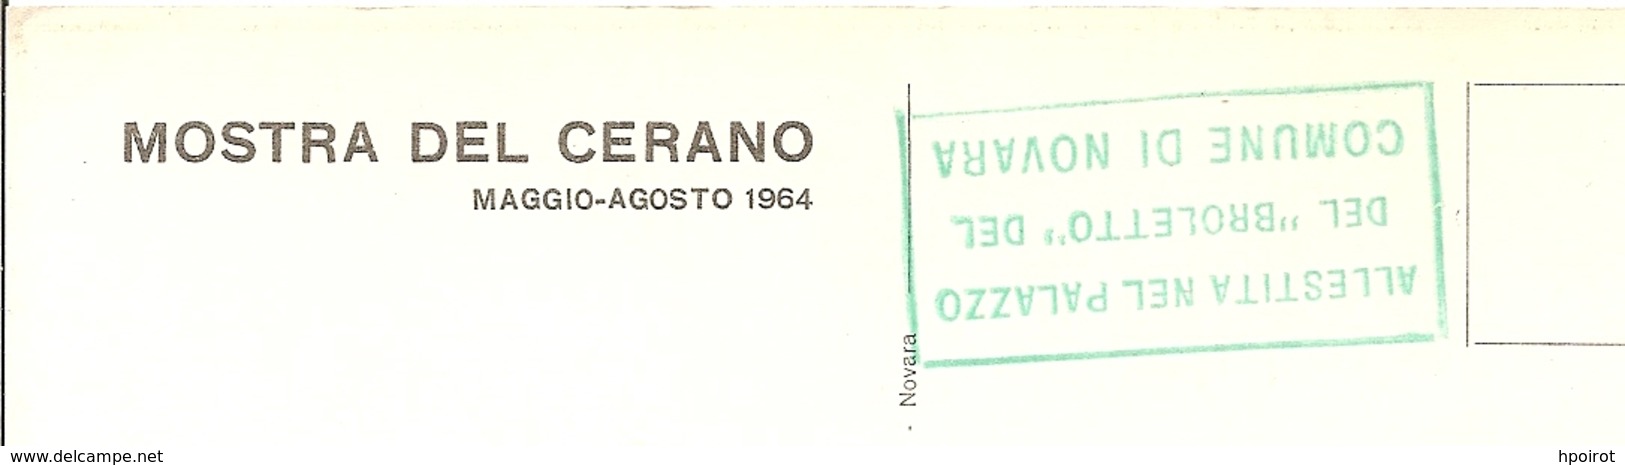 NOVARA - MOSTRA DEL CERANO Al PALAZZO BROLETTO - Maggio-agosto 1964 - S.Carlo Distribuisce Beni Ai Poveri - (rif. F01) - Novara